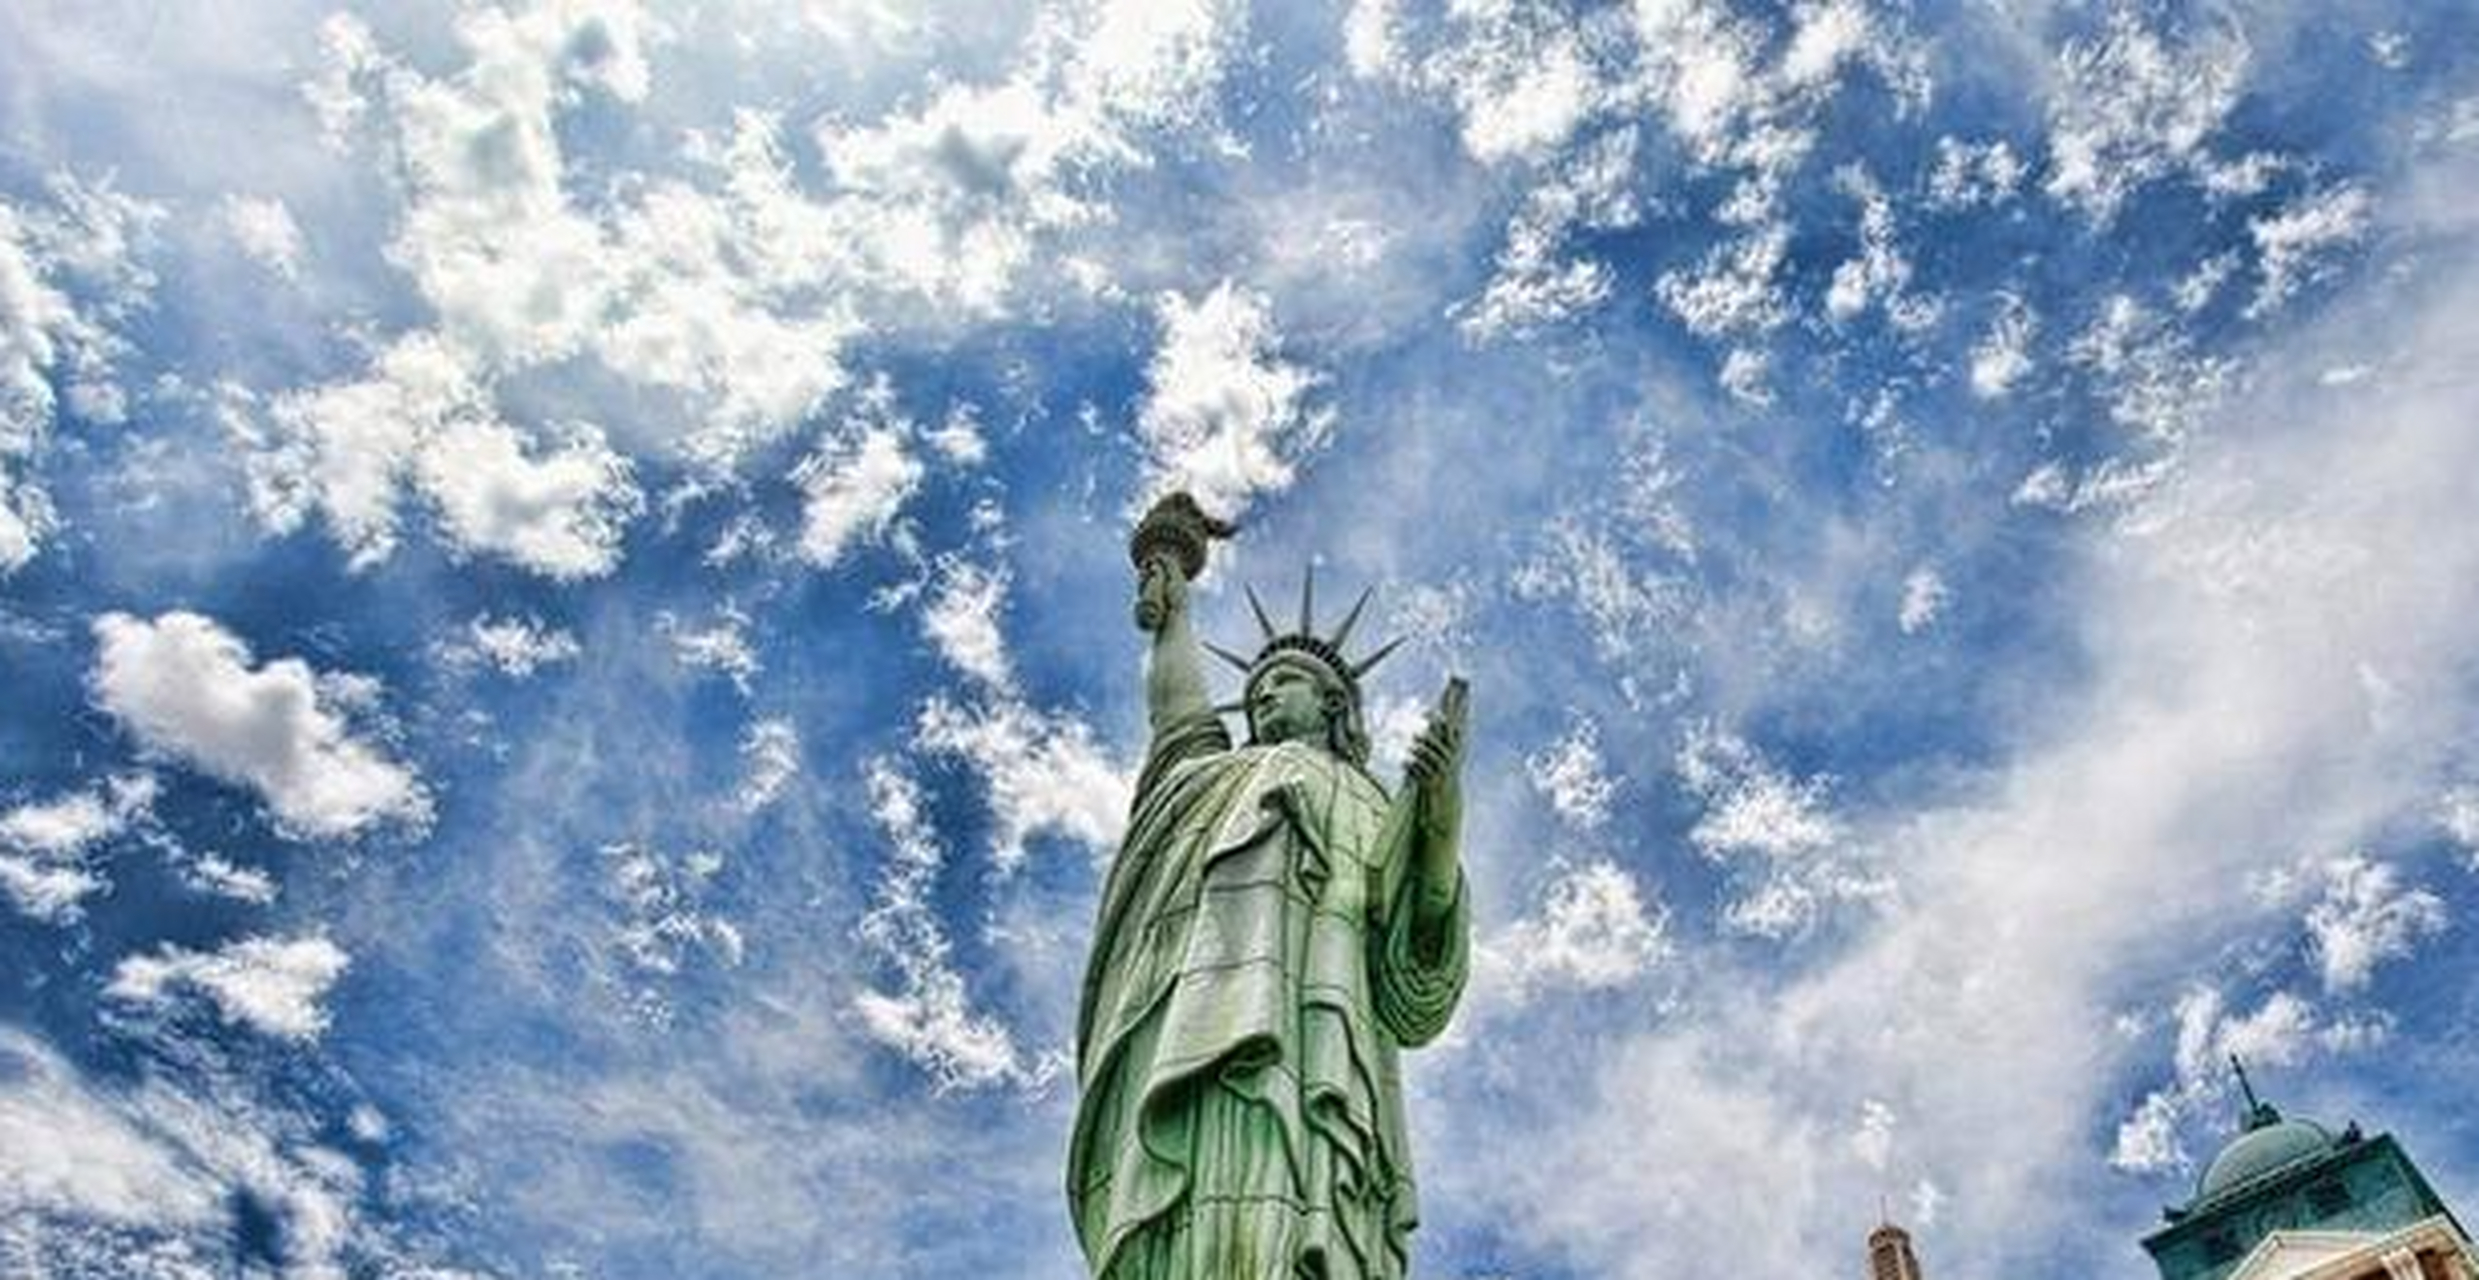 四,自由女神像  纽约的自由女神是世界文化物质产物,也是美国的代表性